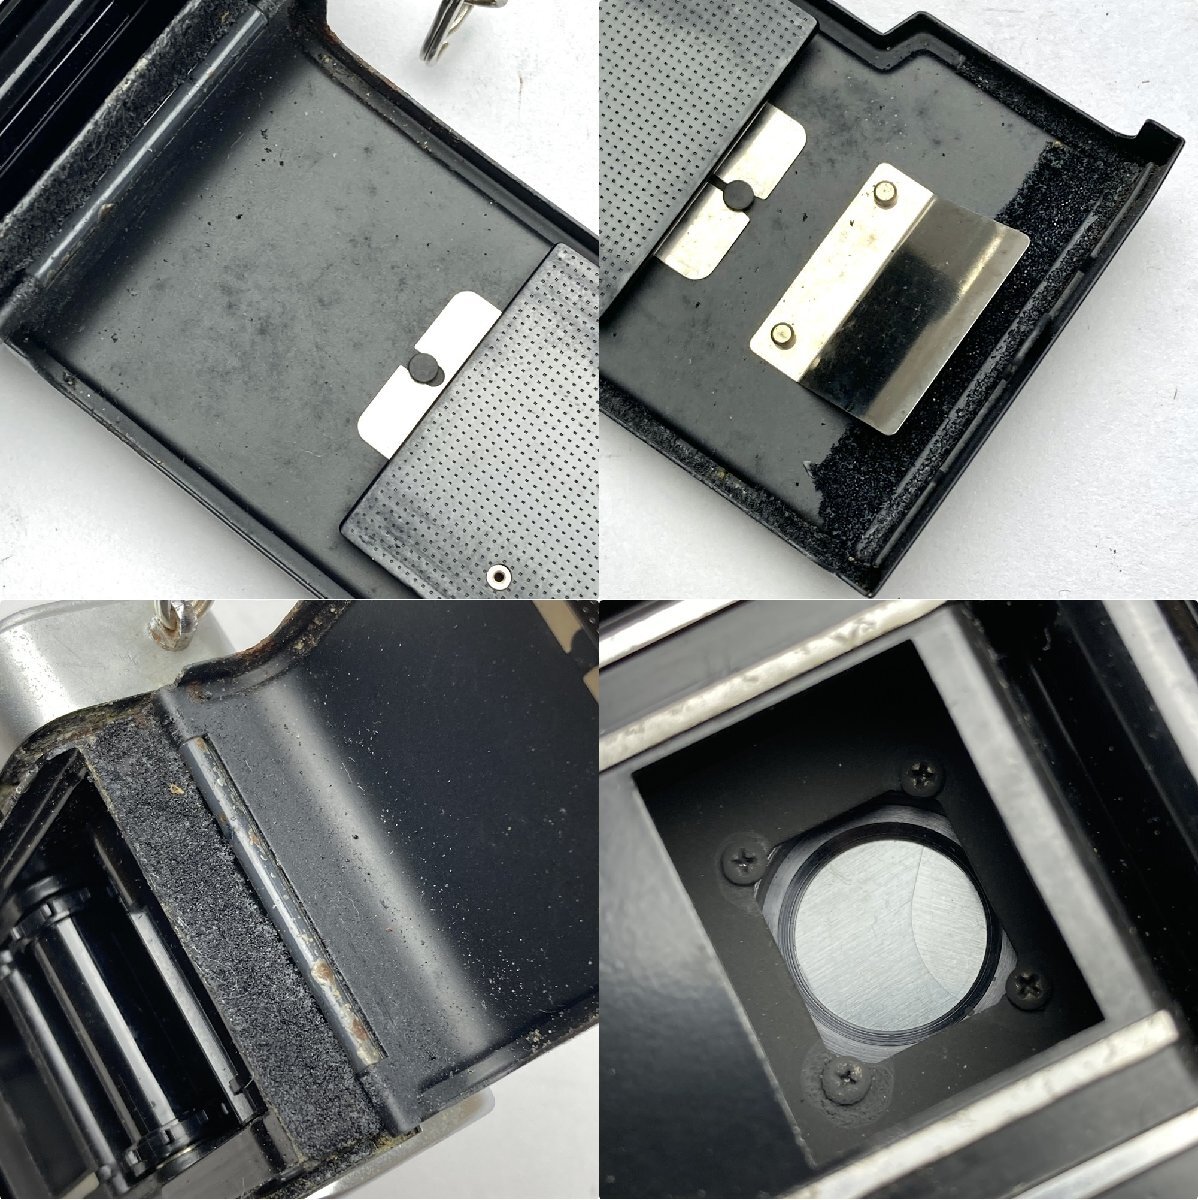 rm) 【ジャンク扱い】 OLYMPUS-PEN オリンパス ペン フィルム カメラ EE-2 1:3.5 f=28mm Lens MADE IN JAPAN 中古 USED 現状渡しの画像7